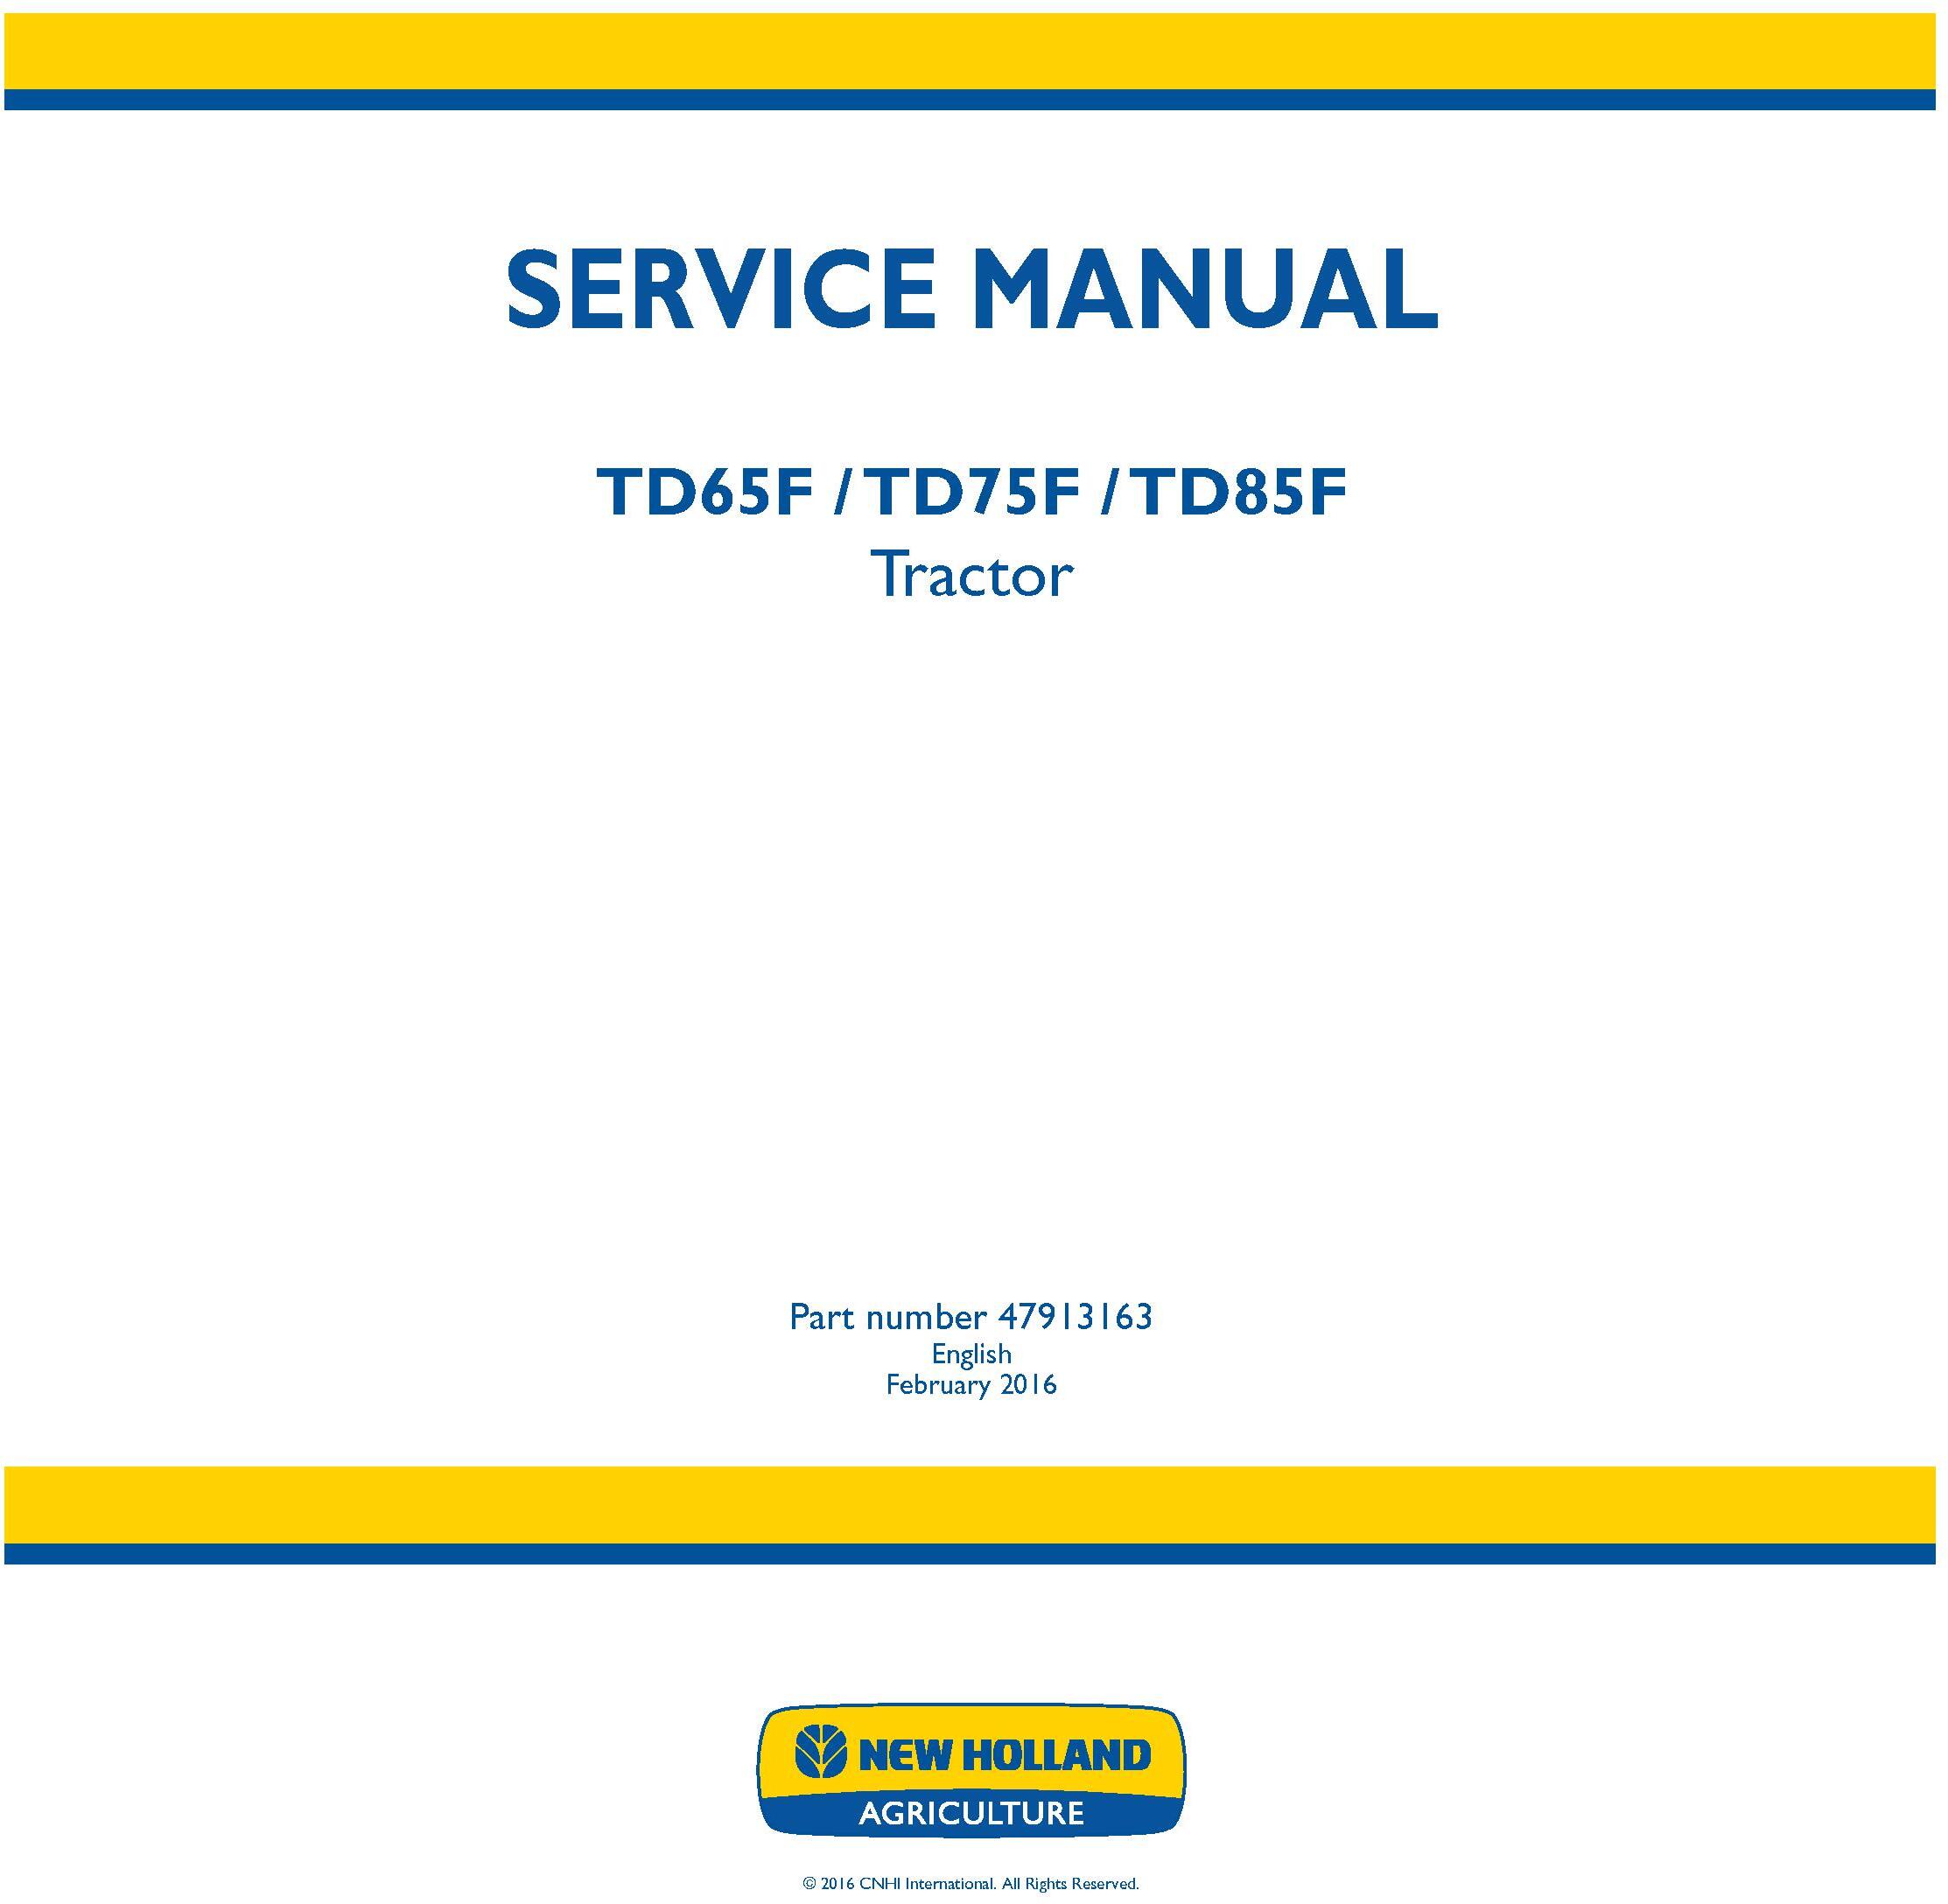 New Holland TD65F, TD75F, TD85F Tractor Service Manual - 19450